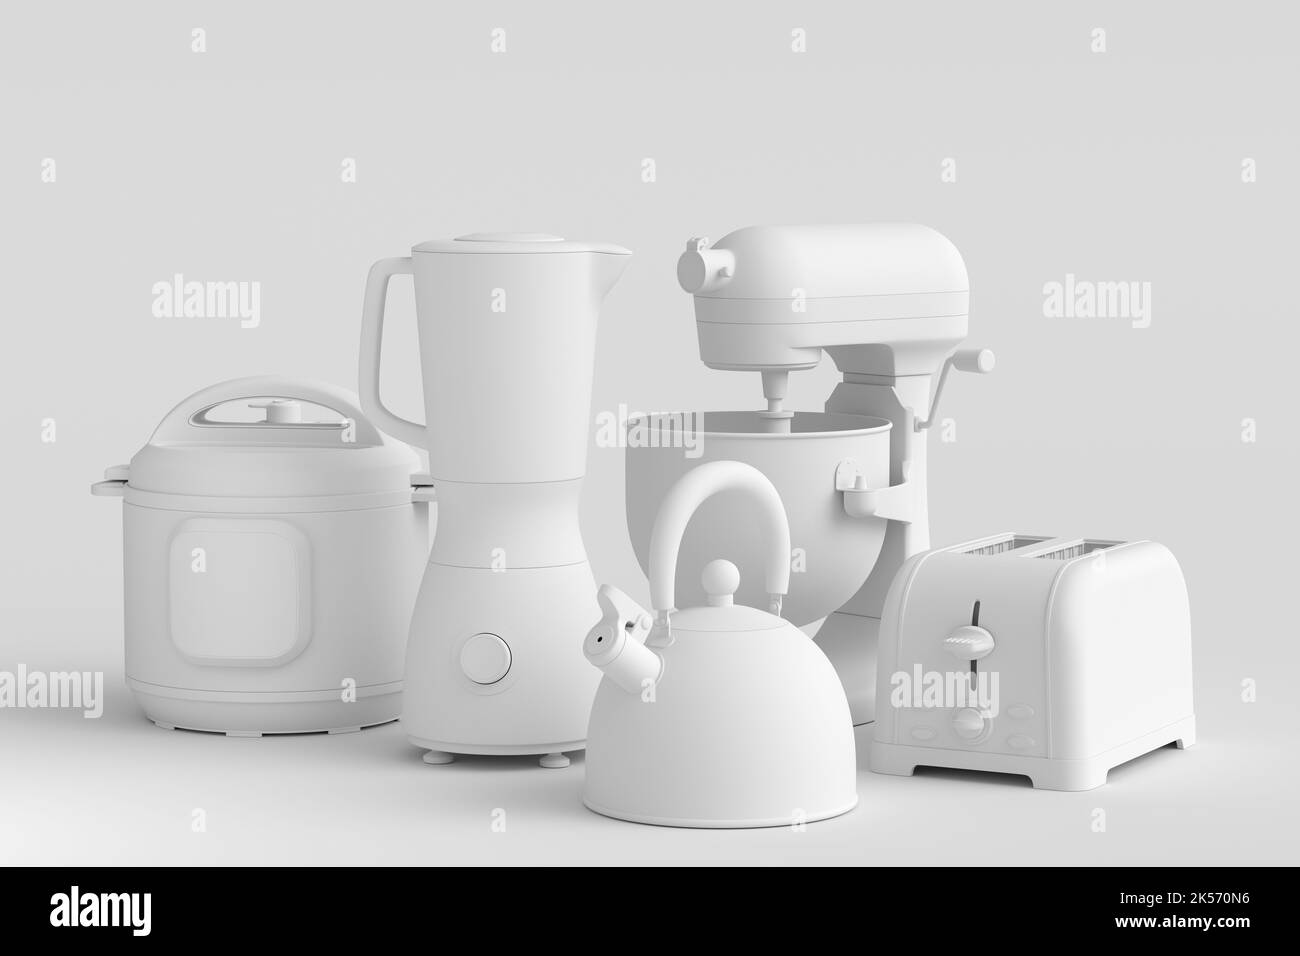 Elektrische Küchengeräte und Utensilien für das Frühstück auf monochromem Hintergrund. 3D Render von Küchengeräten zum Kochen, Backen, Mixen und Whi Stockfoto